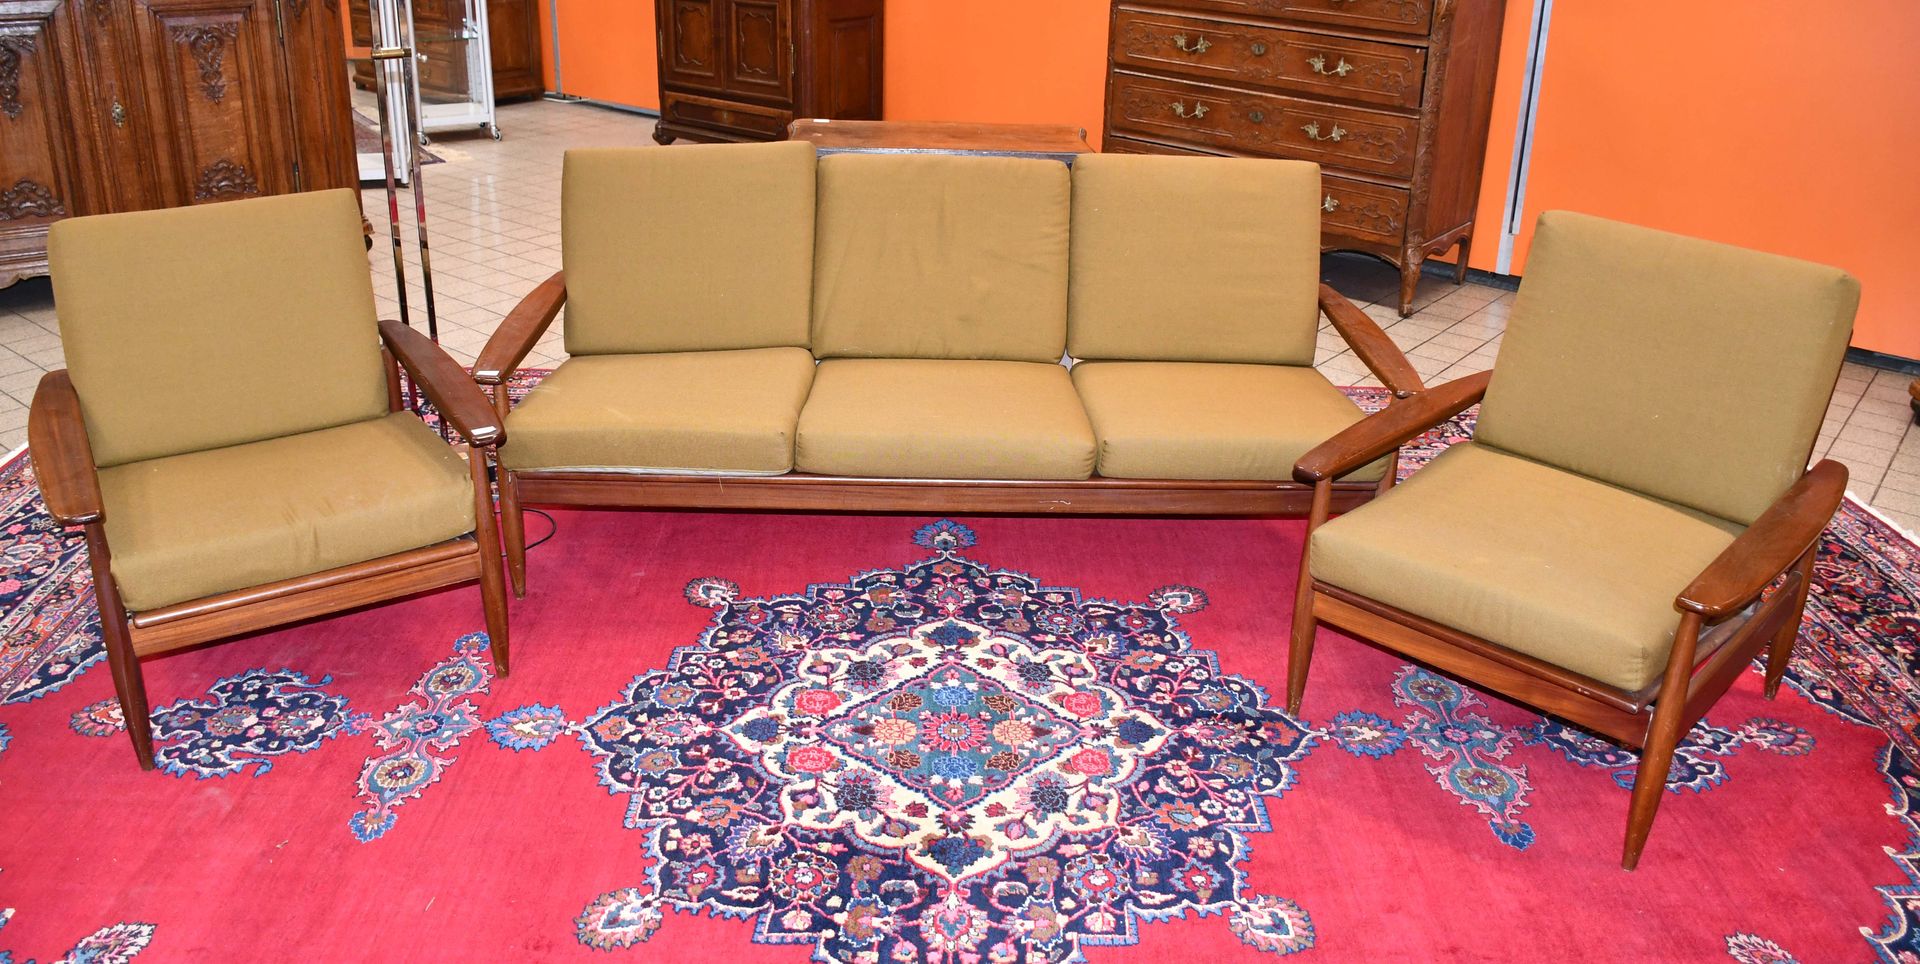 Null 斯堪的纳维亚设计的柚木复古客厅套装

一张三座沙发（完整的）和它的两个扶手椅。两把扶手椅的座椅带子都不见了。